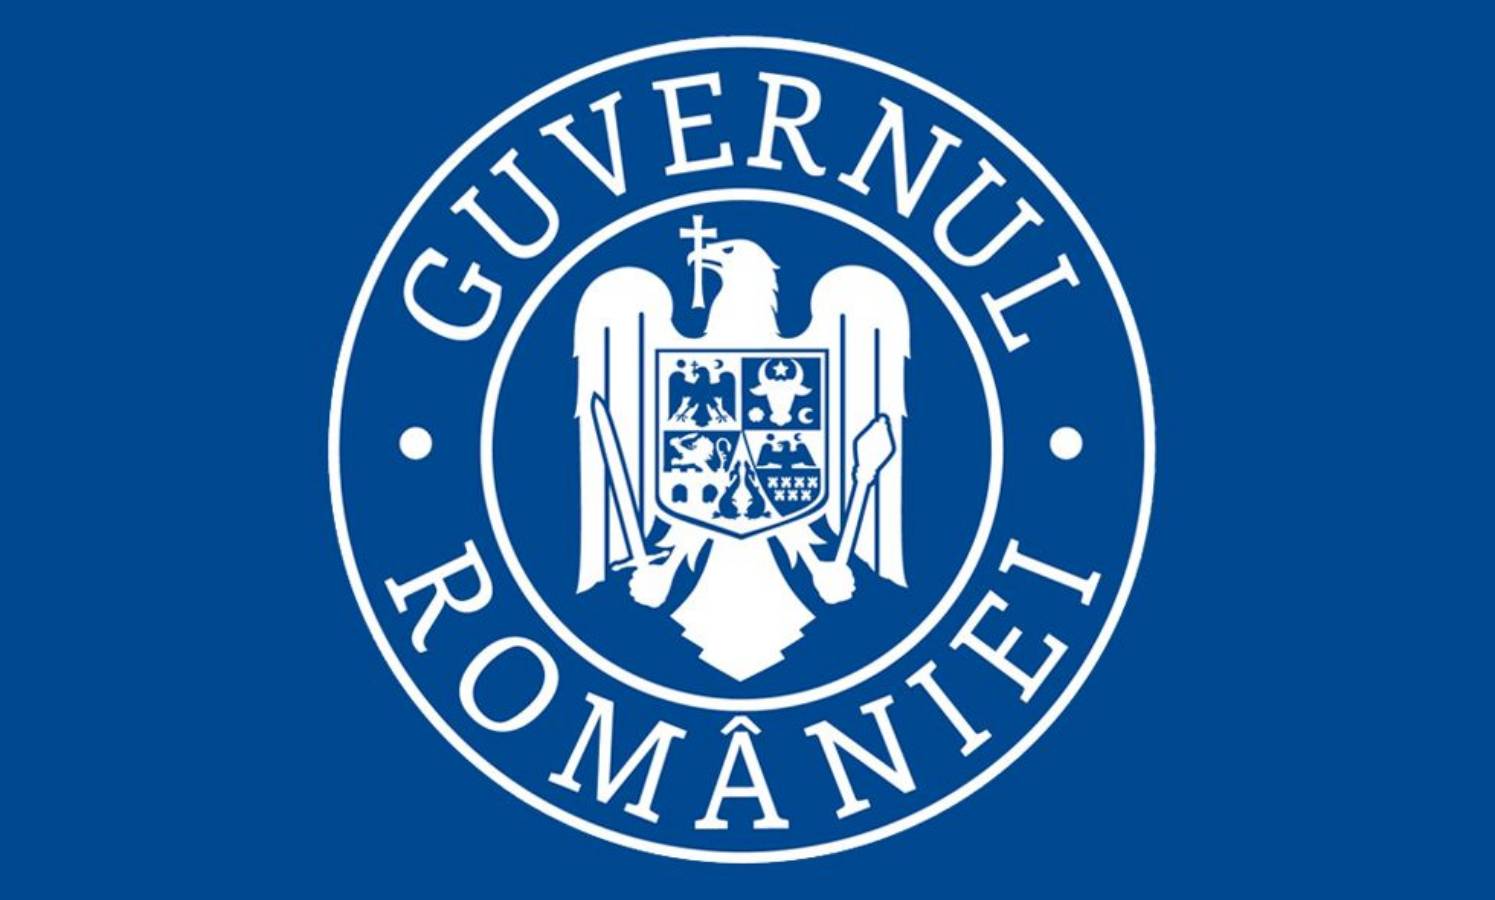 Regering van Roemenië Slecht nieuws gratis maskers